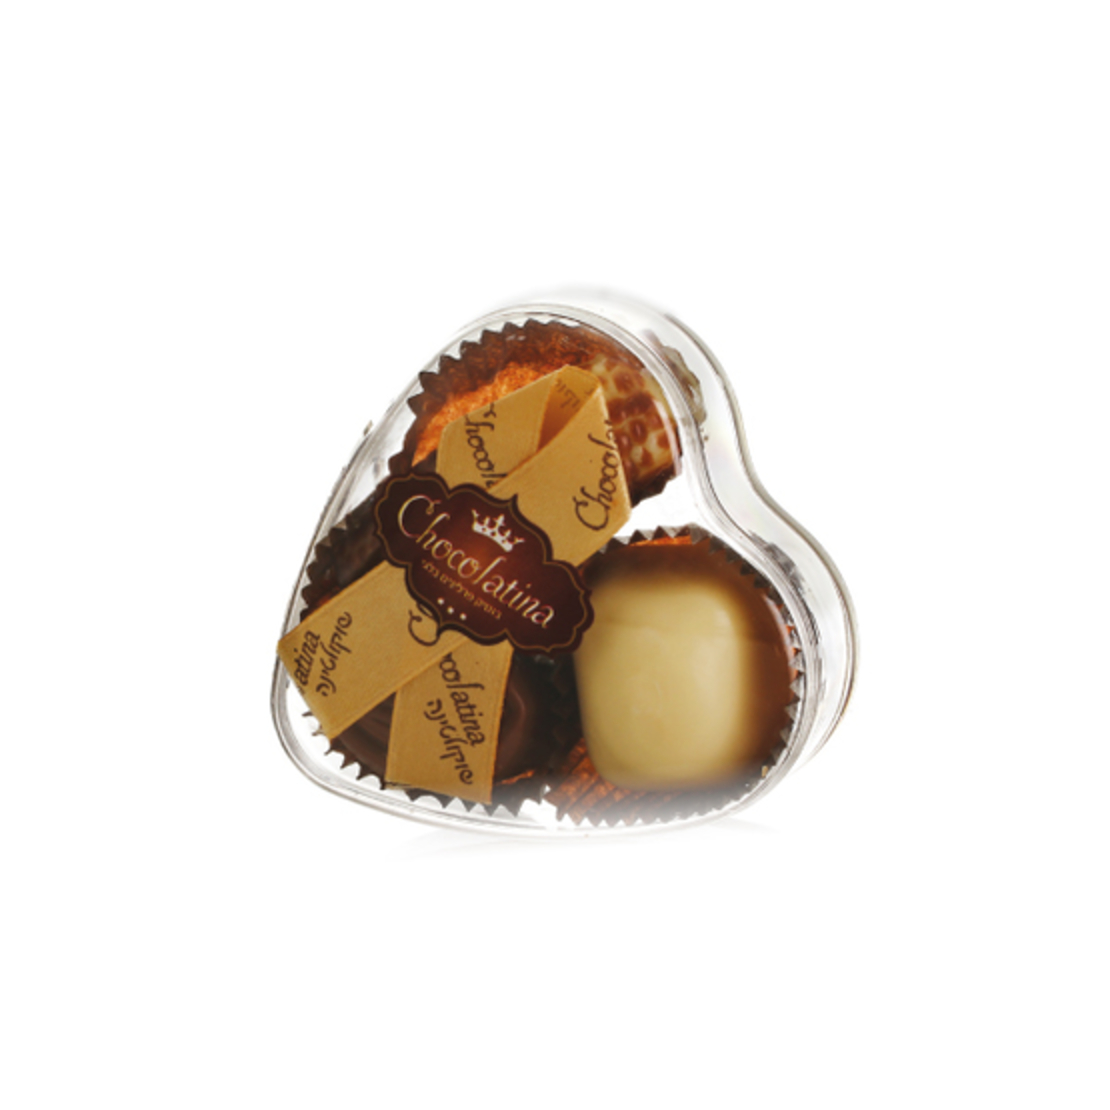 Chocolatetina - 3 pralines heart box | BADATZ